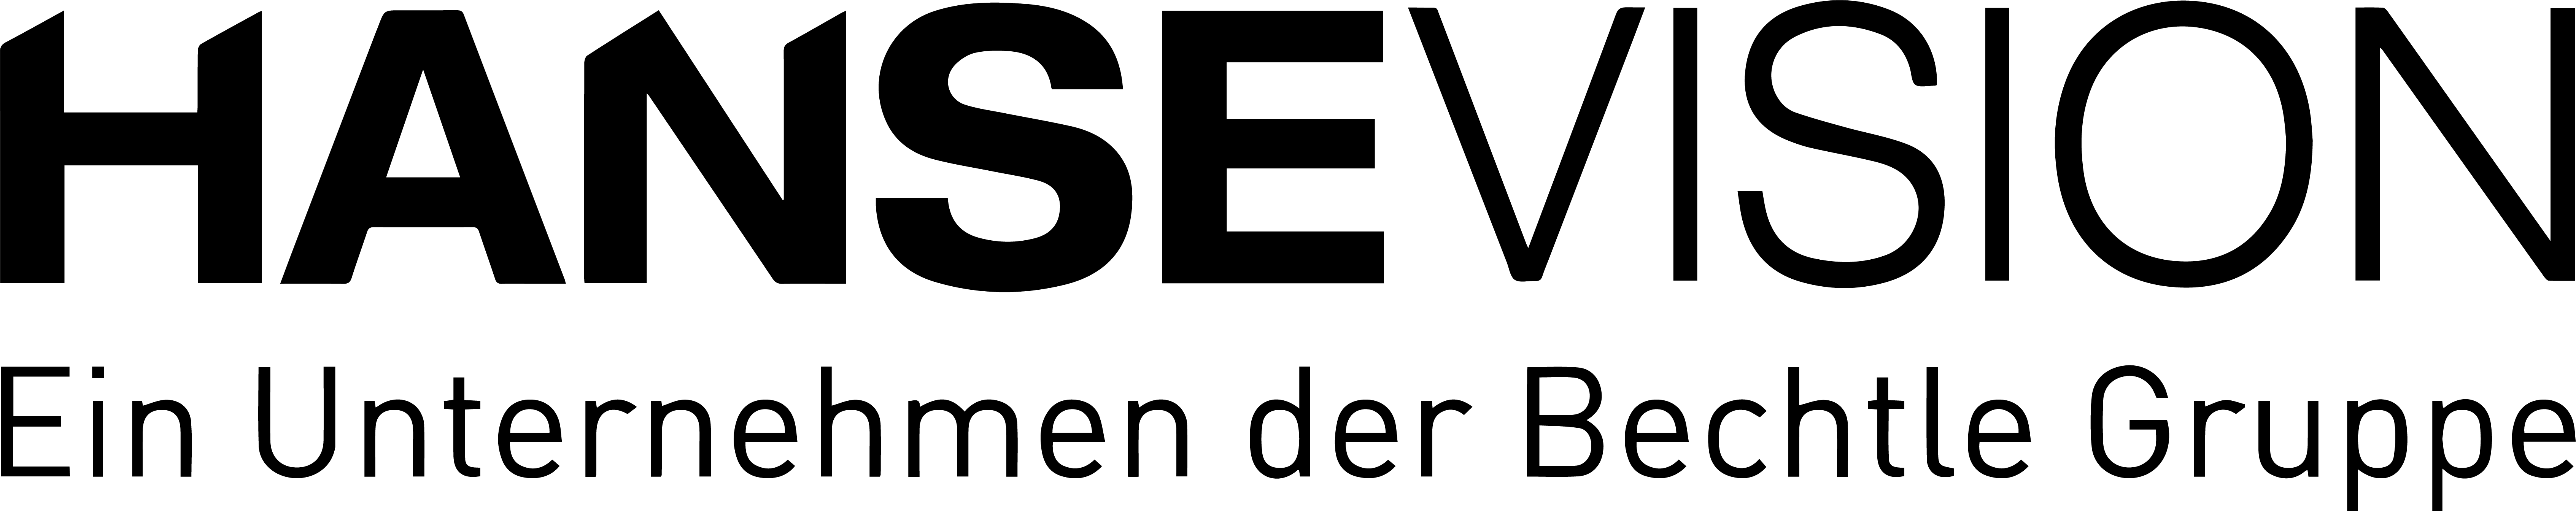 Logo_mit_Bechtle_s